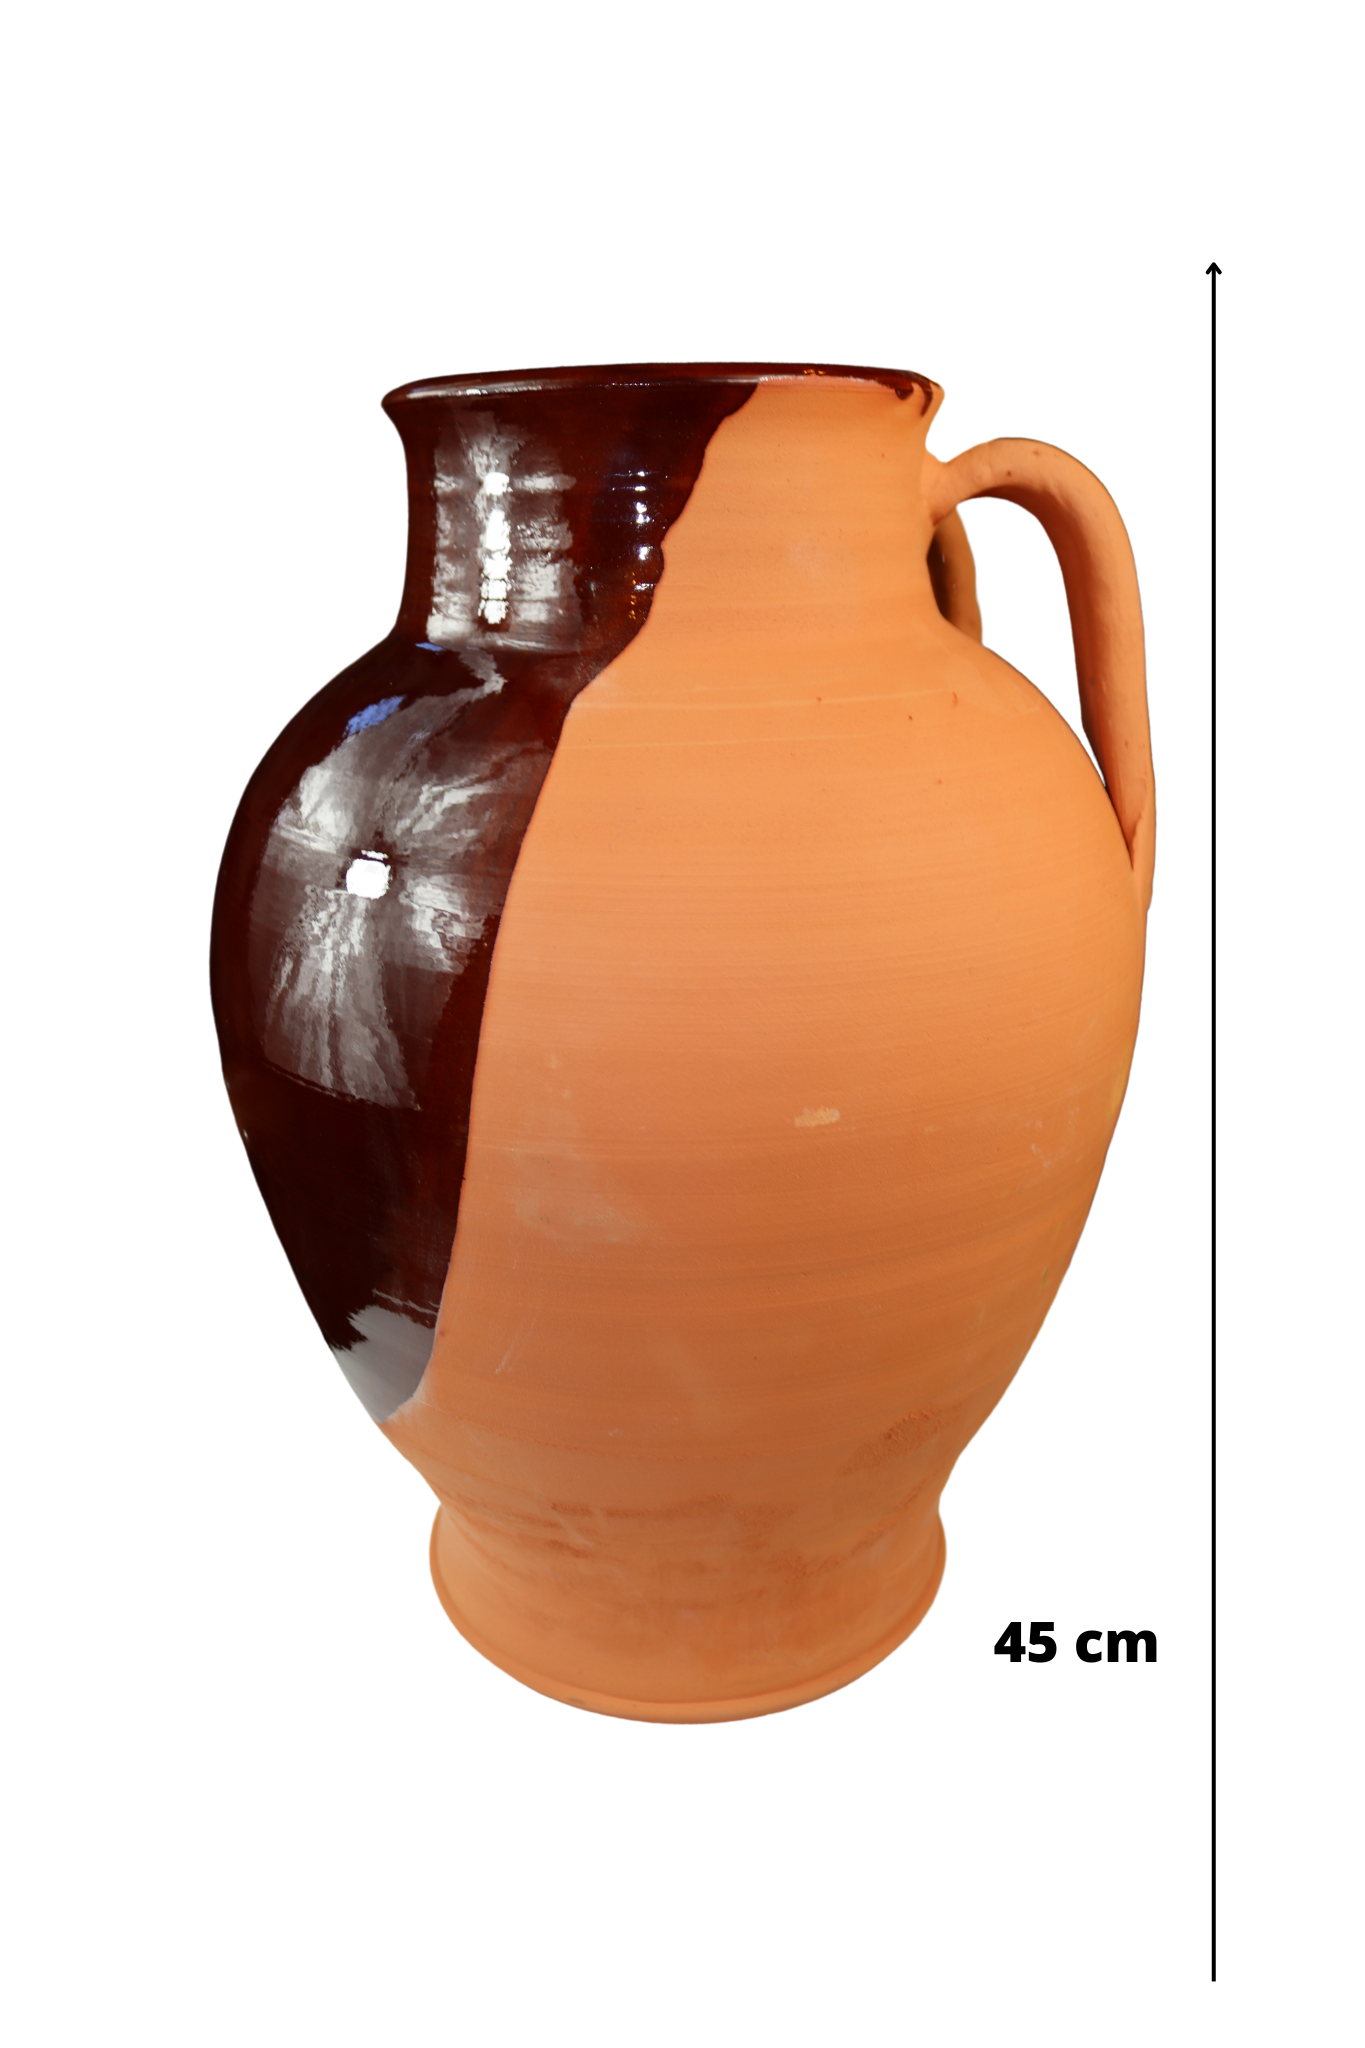 Pignata in terracotta gigante 45 cm di altezza – La bottega del Pollino